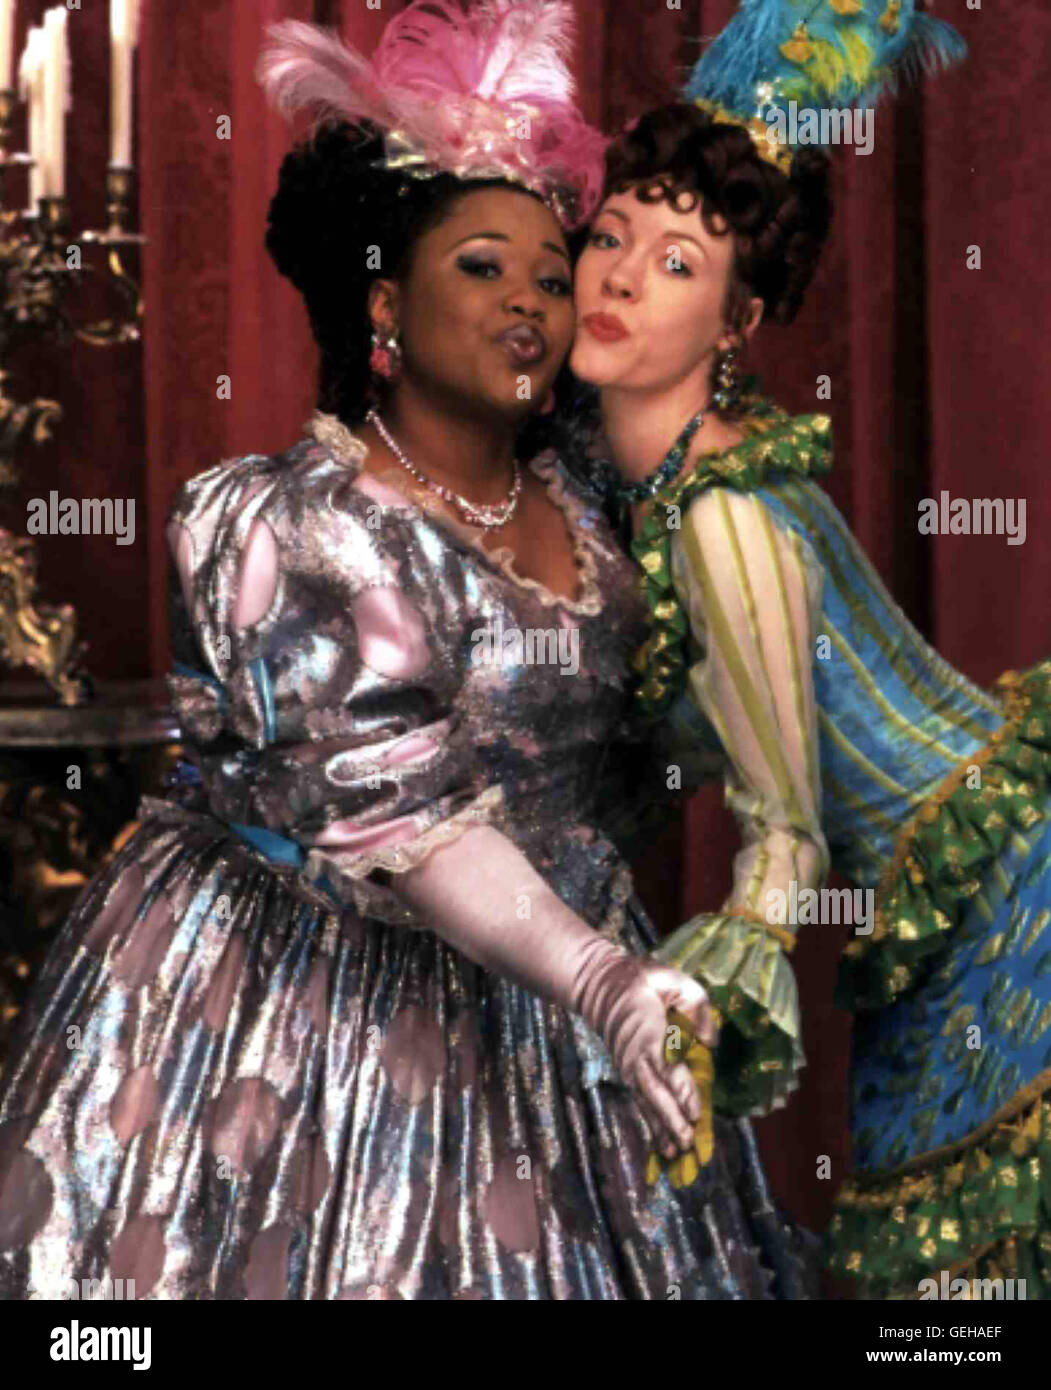 Die Stiefschwestern Minerva (Natalie Desselle) und Calliope (Veanne Cox) *** Local Caption *** 1997, Cinderella, Rodgers & Hammerstein's Cinderella Stock Photo